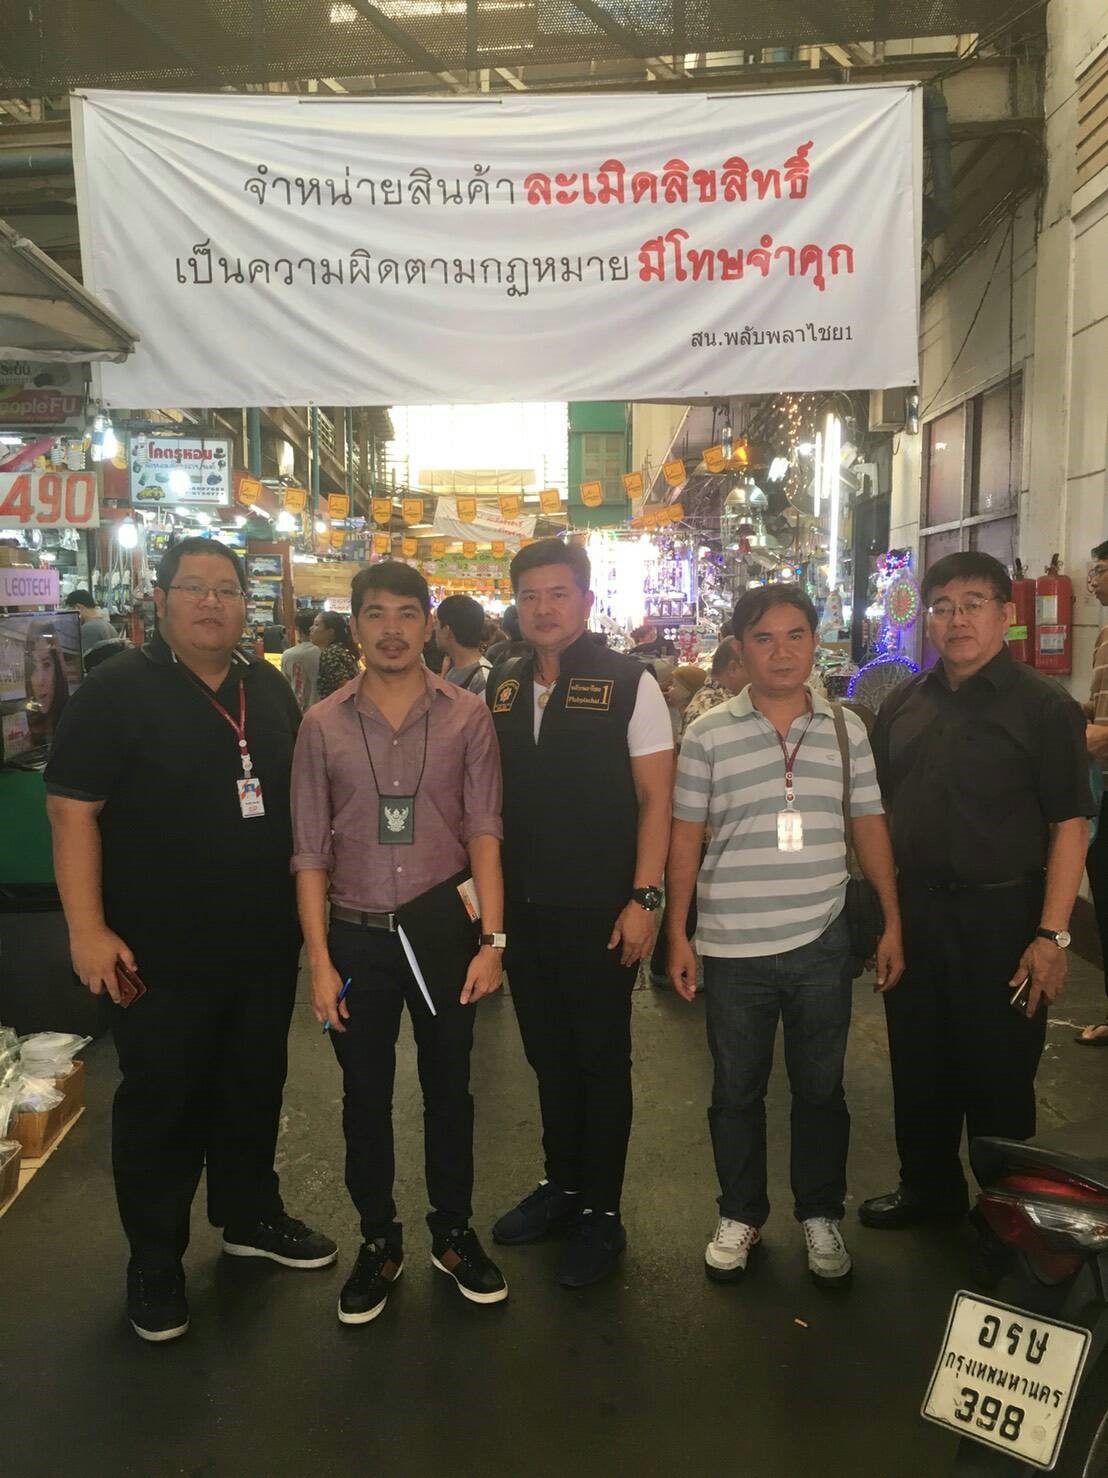 No Fake at Khlong Thom Market